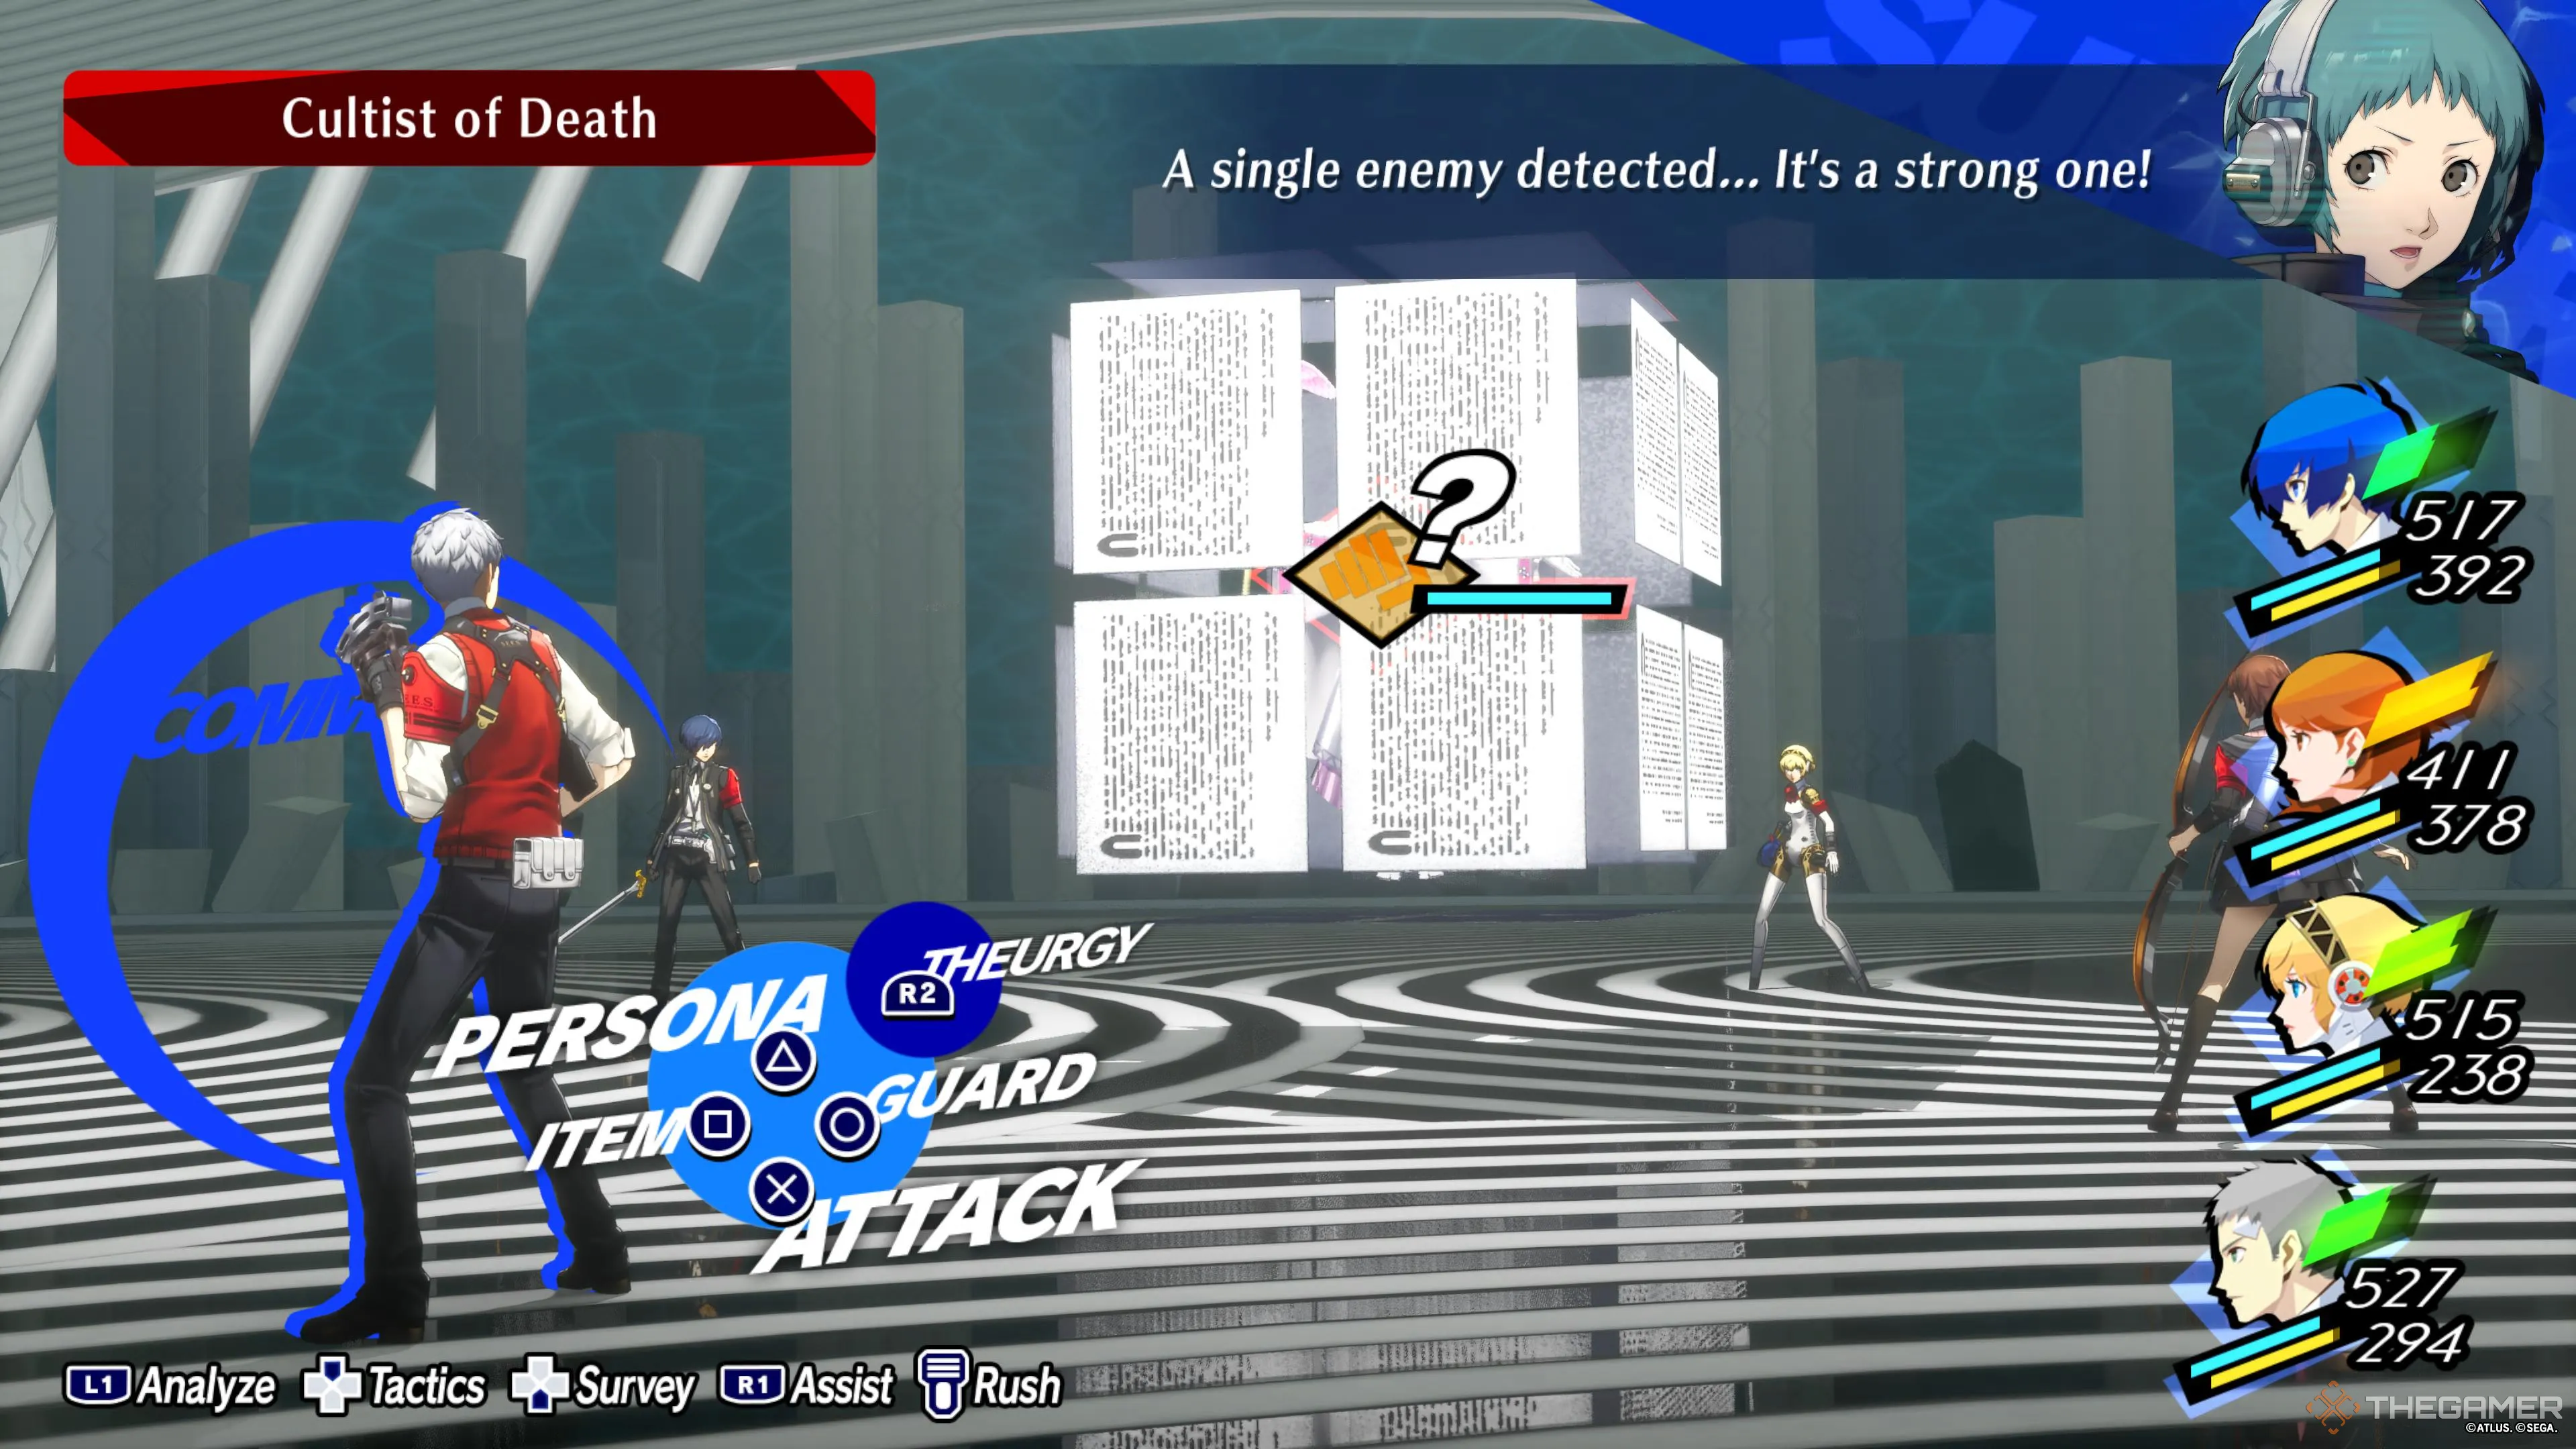 Акихико из Persona 3 Reload сражается с Культистом Смерти